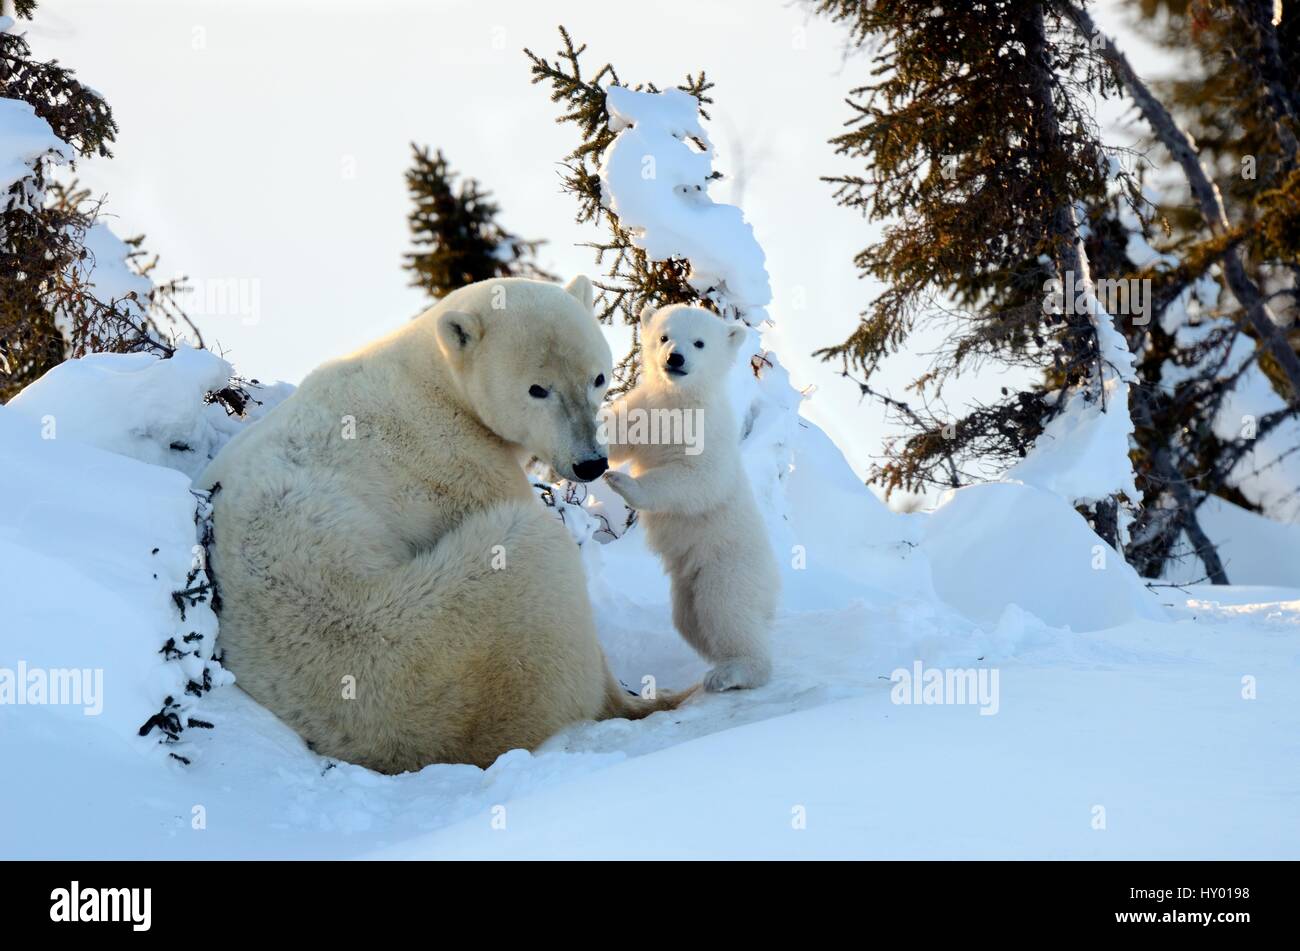 Orso polare (Ursus maritimus) madre con cub di età compresa tra i 3 mesi a den. Wapusk National Park, Churchill, Manitoba, Canada. Foto Stock